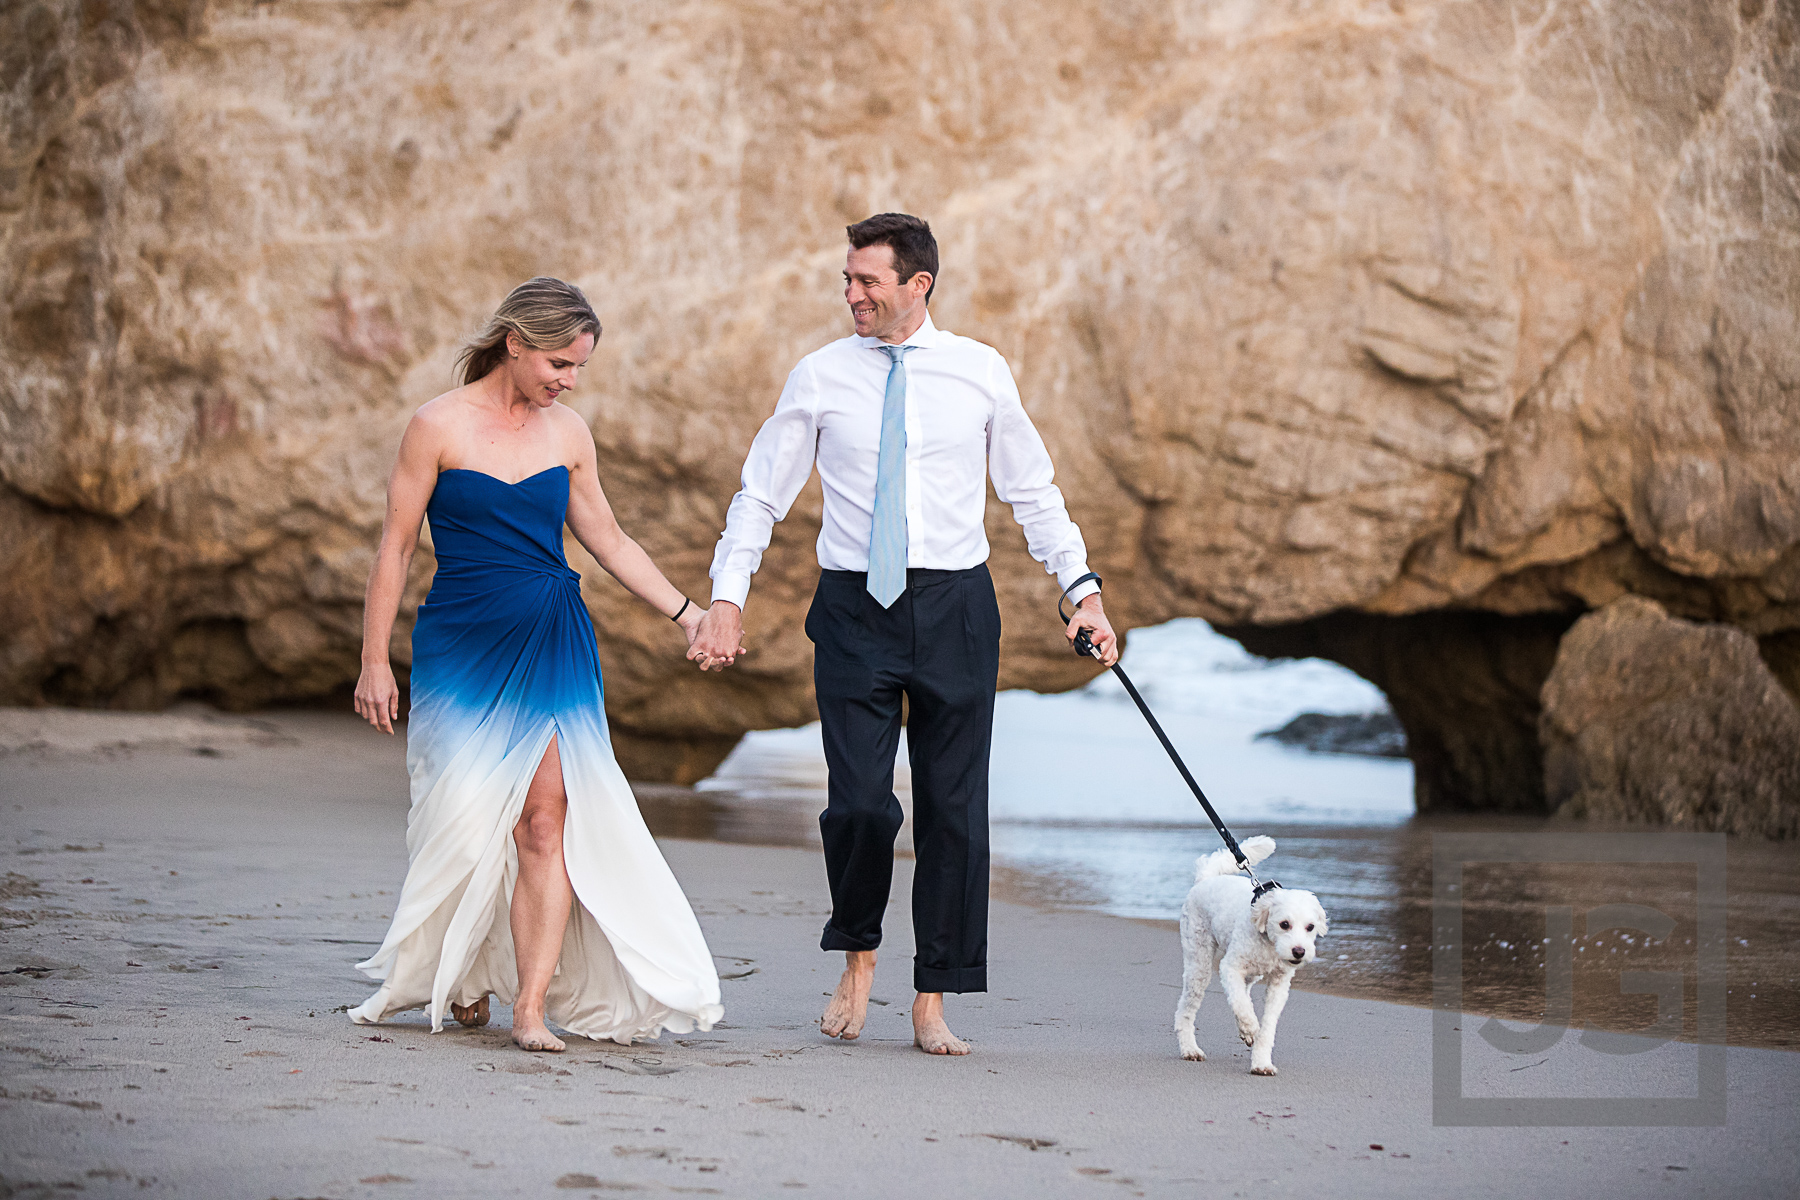 Engagement Photography Malibu with dog